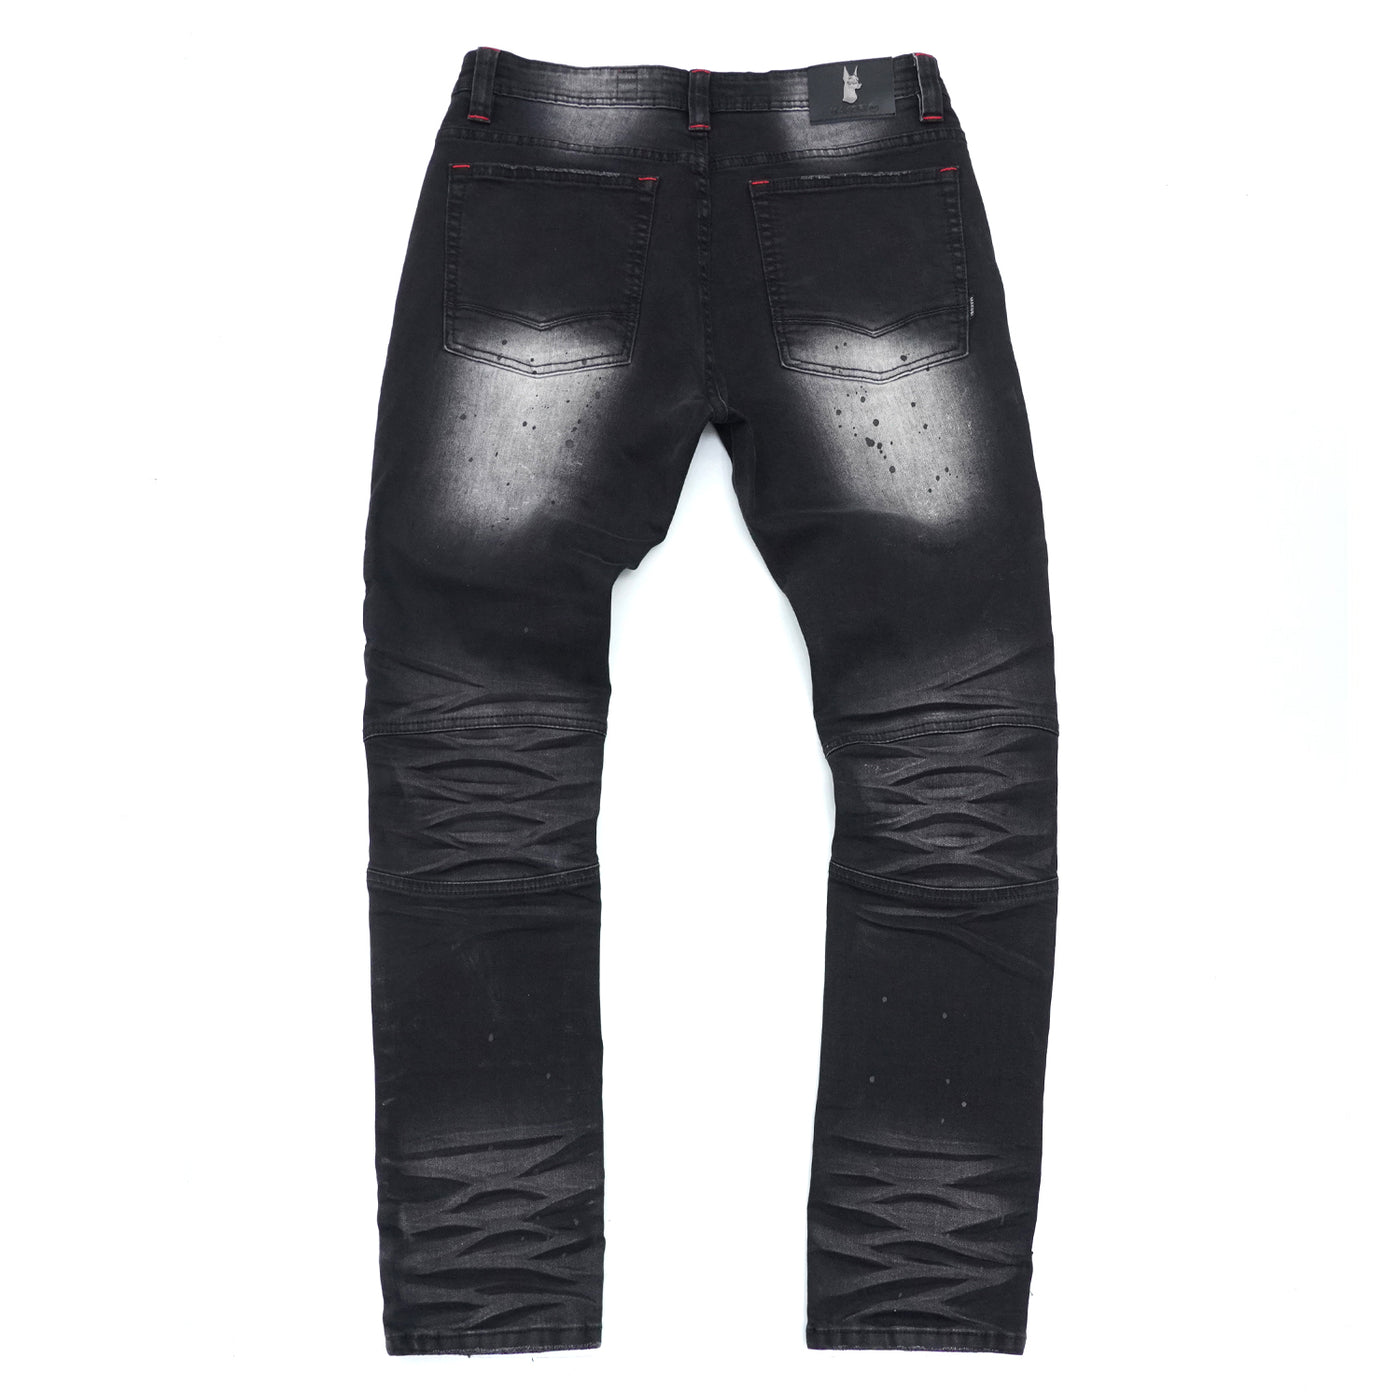 M1924 Makobi Daytona Biker Jeans - Black Wash – Makobi Jeans USA